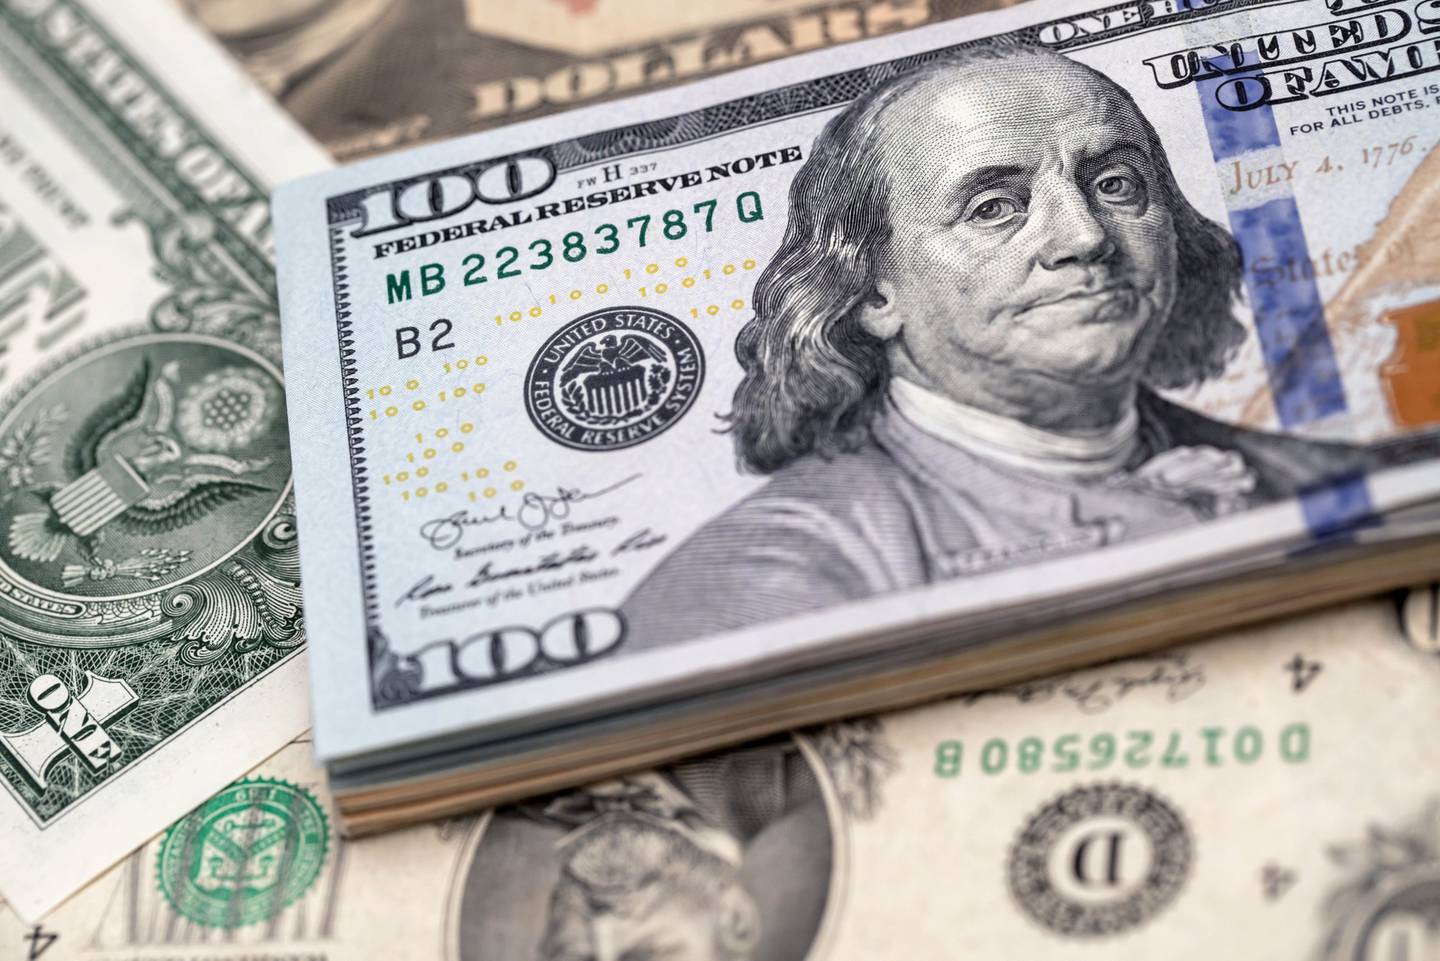 El dólar estadounidense se compró o vendió en aproximadamente el 88 por ciento de las transacciones de divisas globales en abril de 2019. Esta proporción se ha mantenido estable durante los últimos 20 años, indicó un estudio de la Fed.dfd